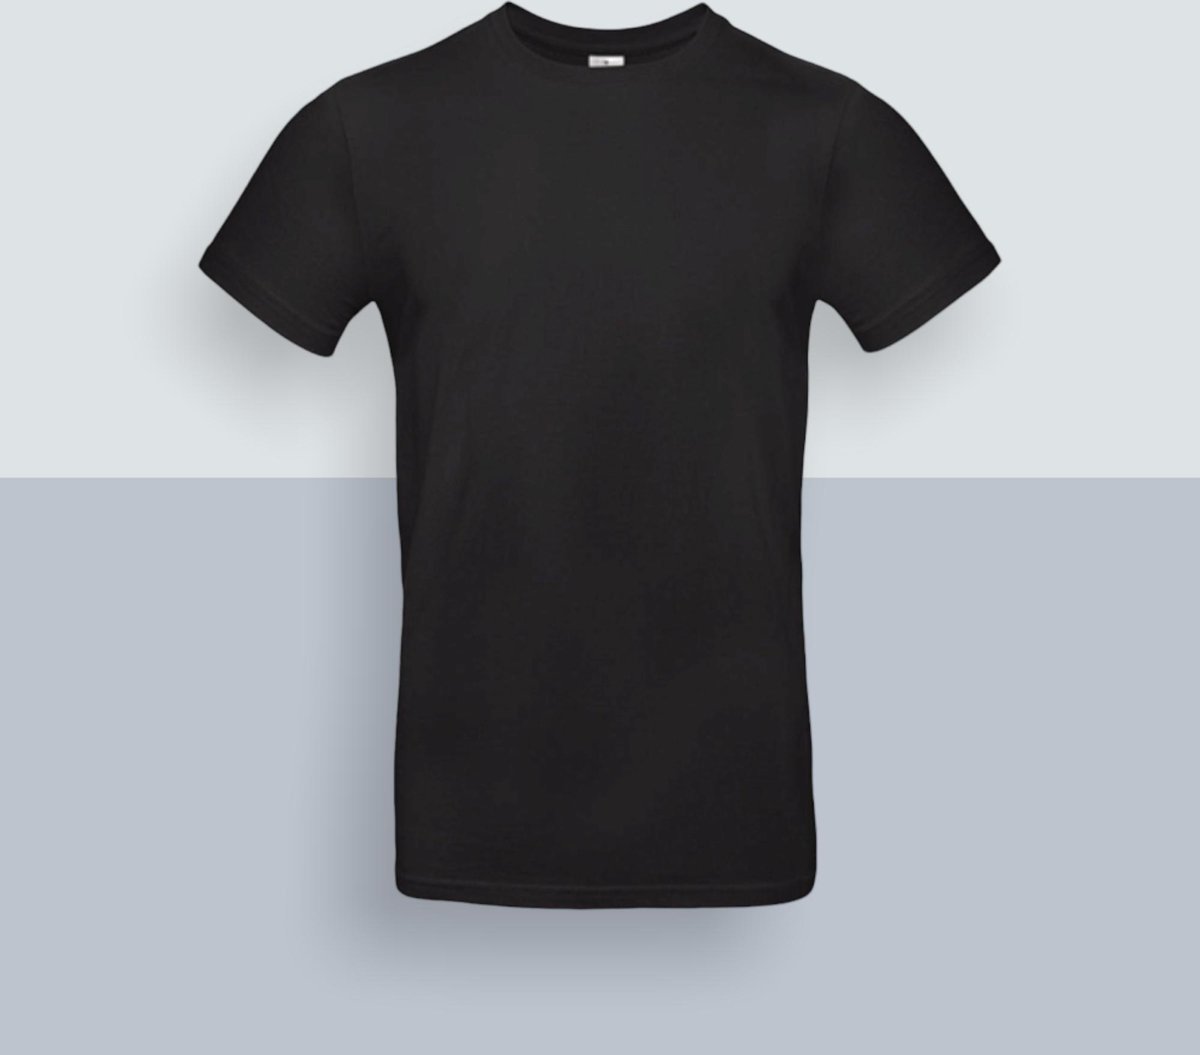 B & C - T-Shirt - pakket van 5 shirts - model heren - effen zwart - maat L